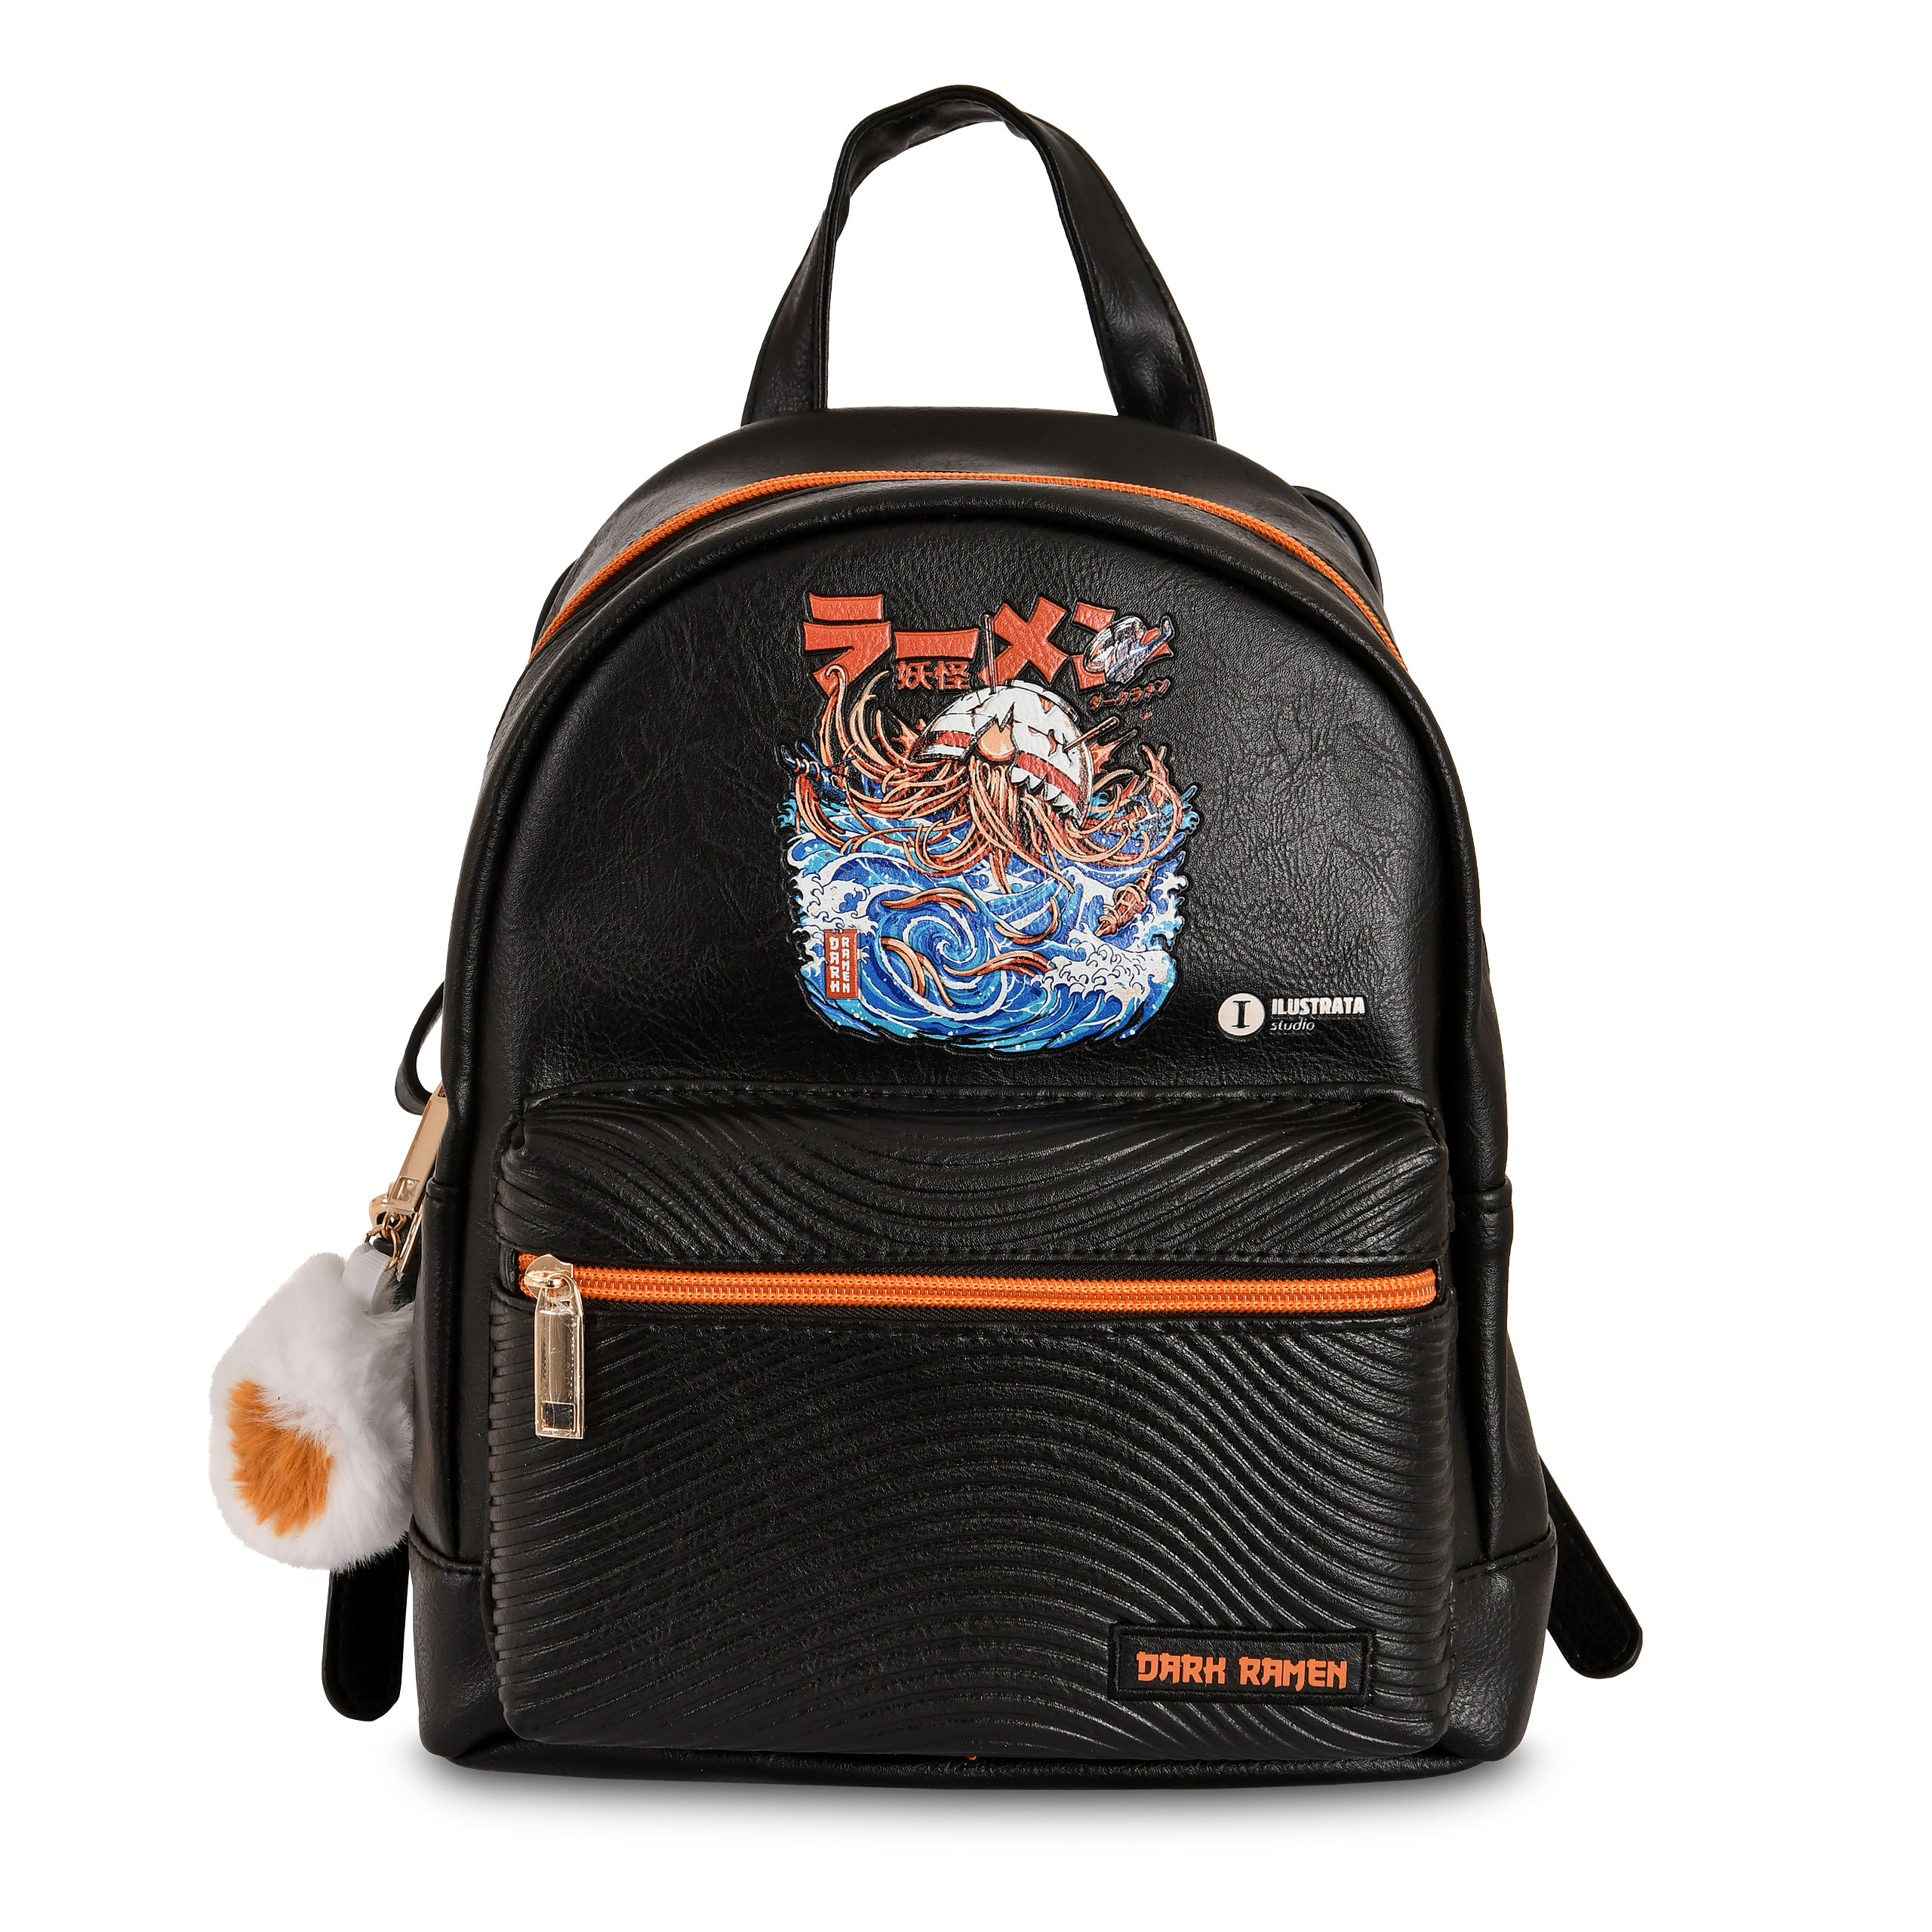 Ilustrata - Dark Ramen Backpack with Pom Pom Pendant black